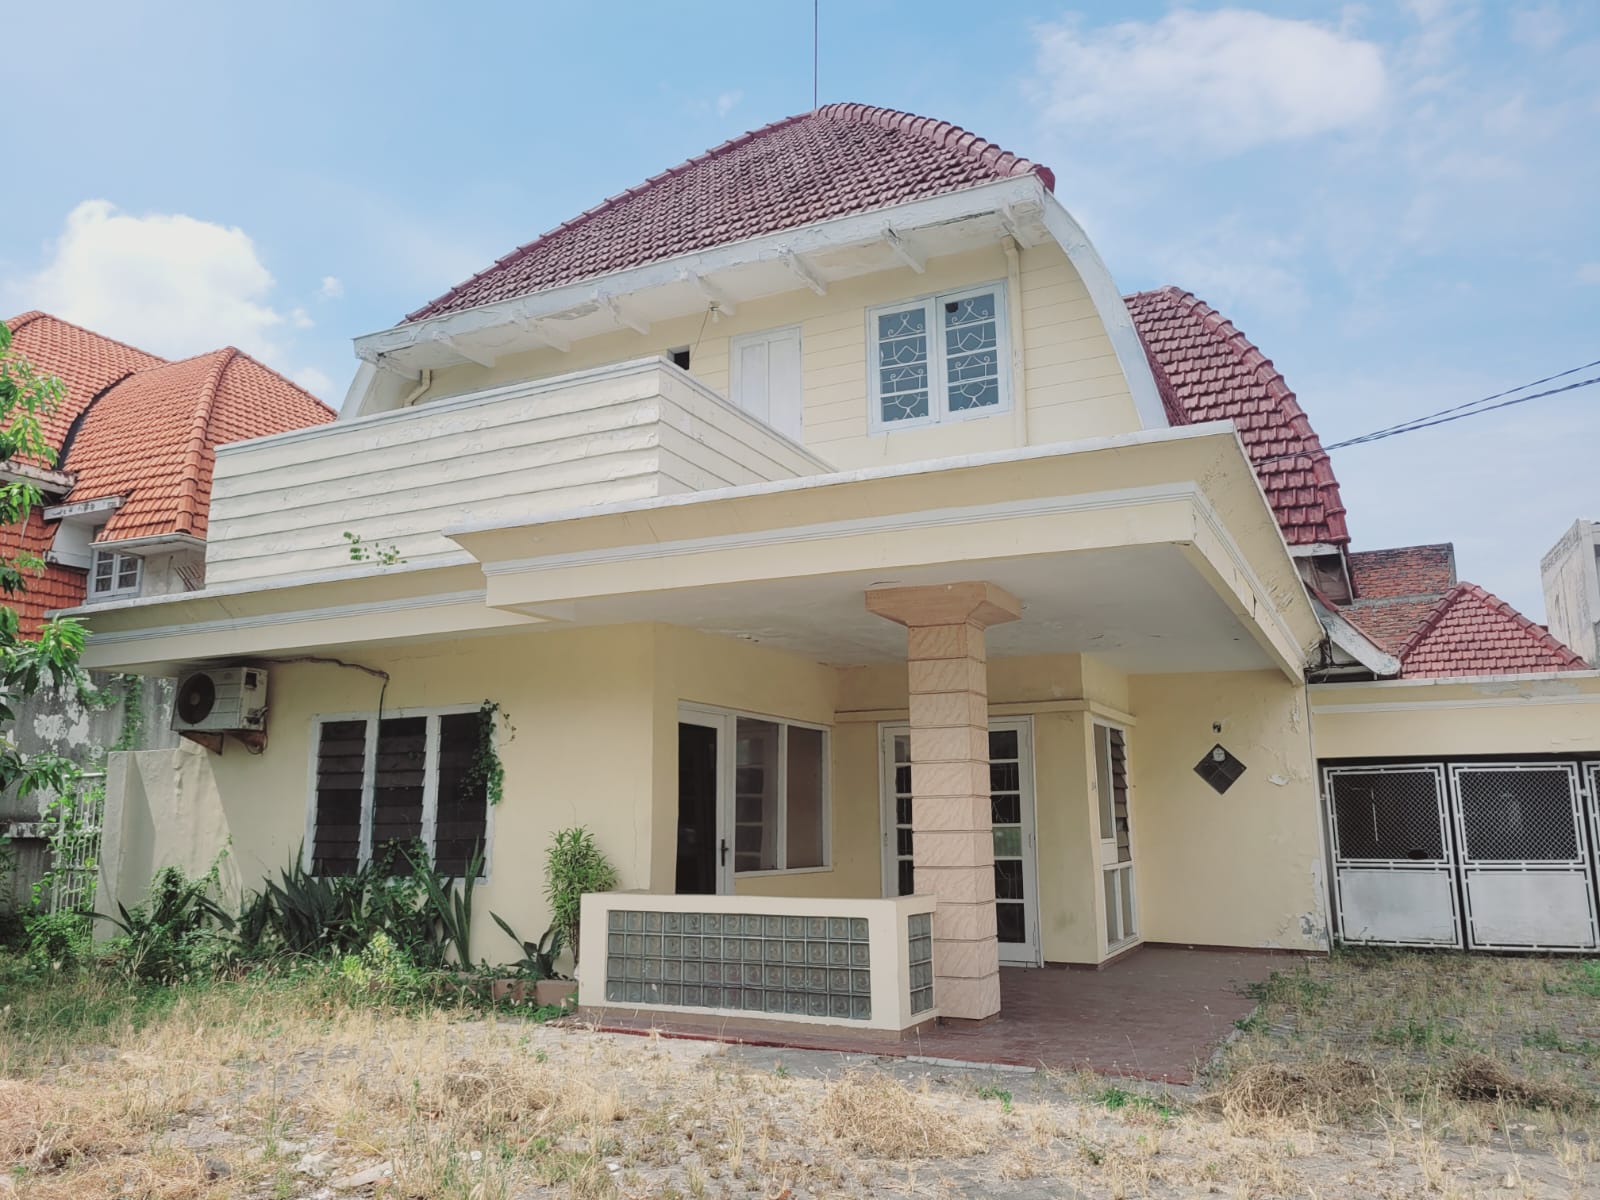 Situs Rumah  Jalan Bodro